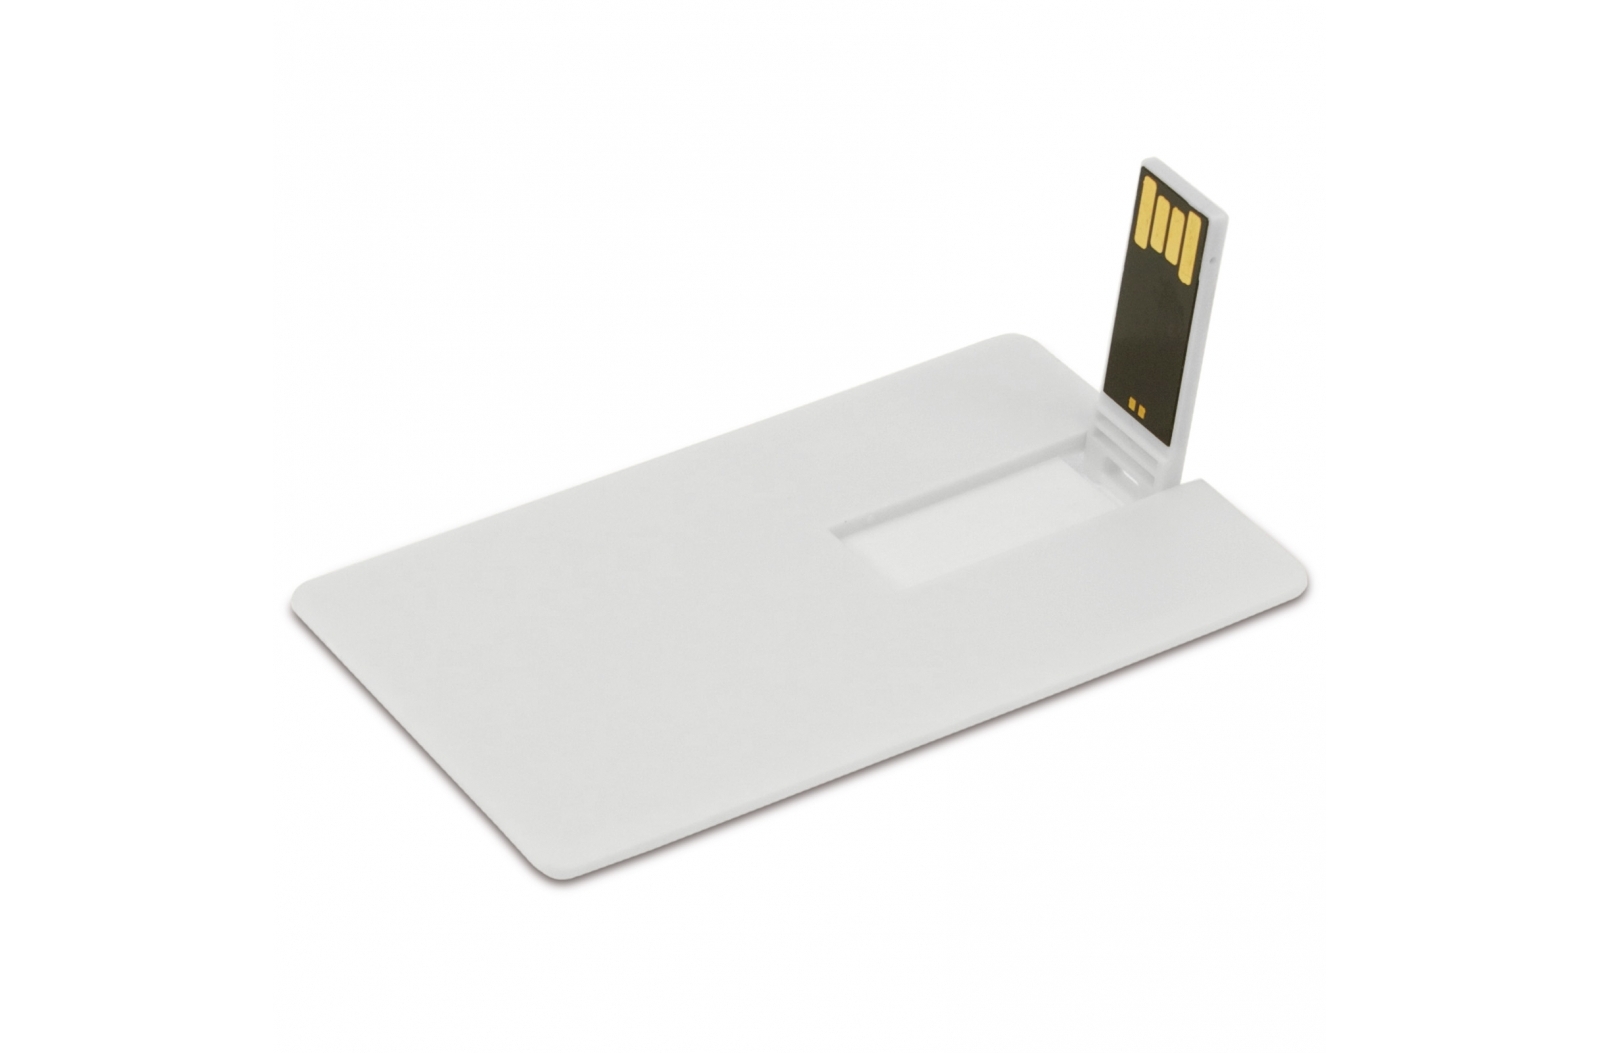 Clé USB 4GB Flash drive forme carte de crédit - Zaprinta France